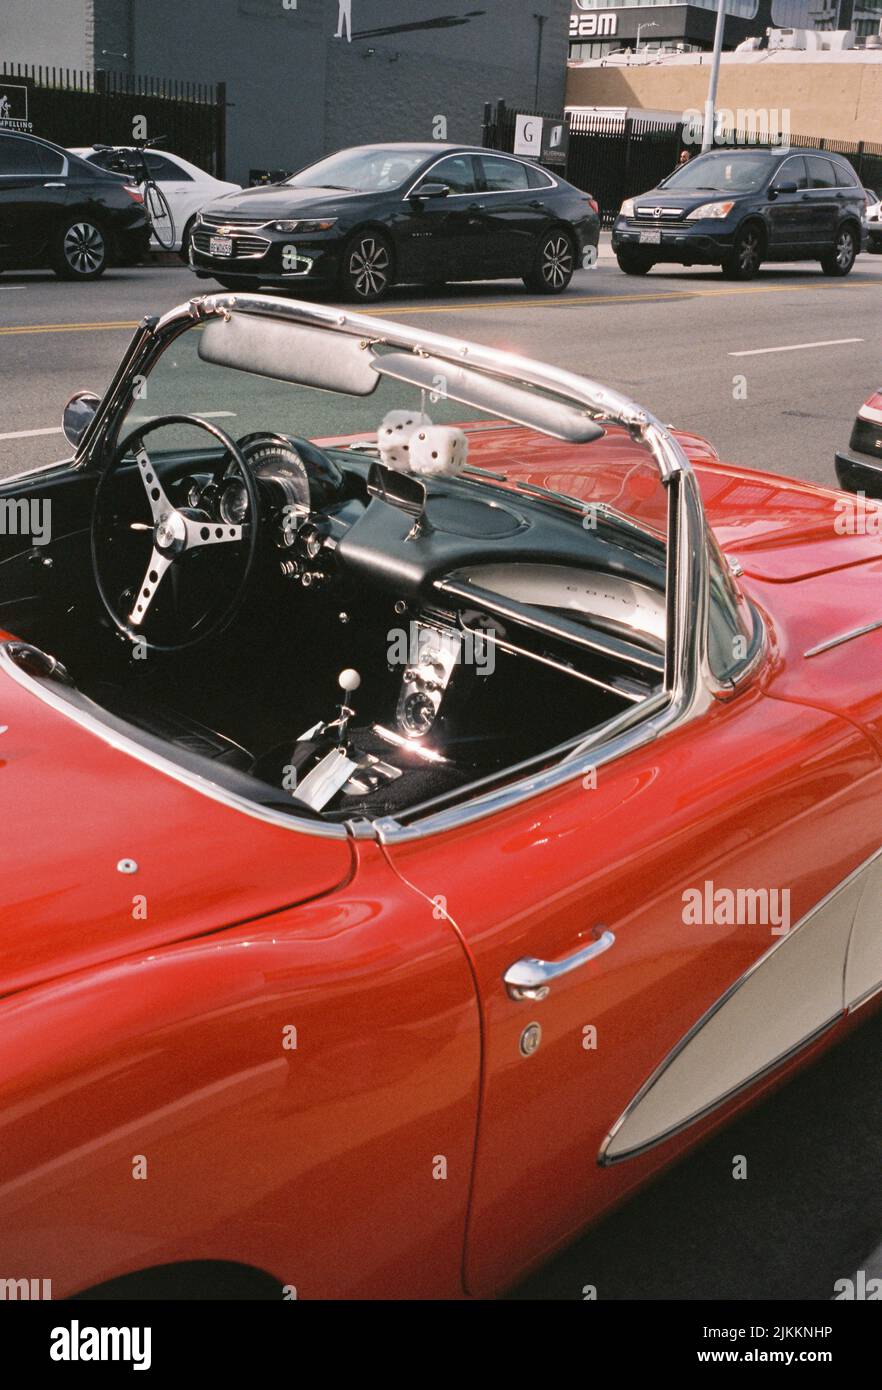 Un'auto d'epoca rossa parcheggiata per le strade DI LA Foto Stock